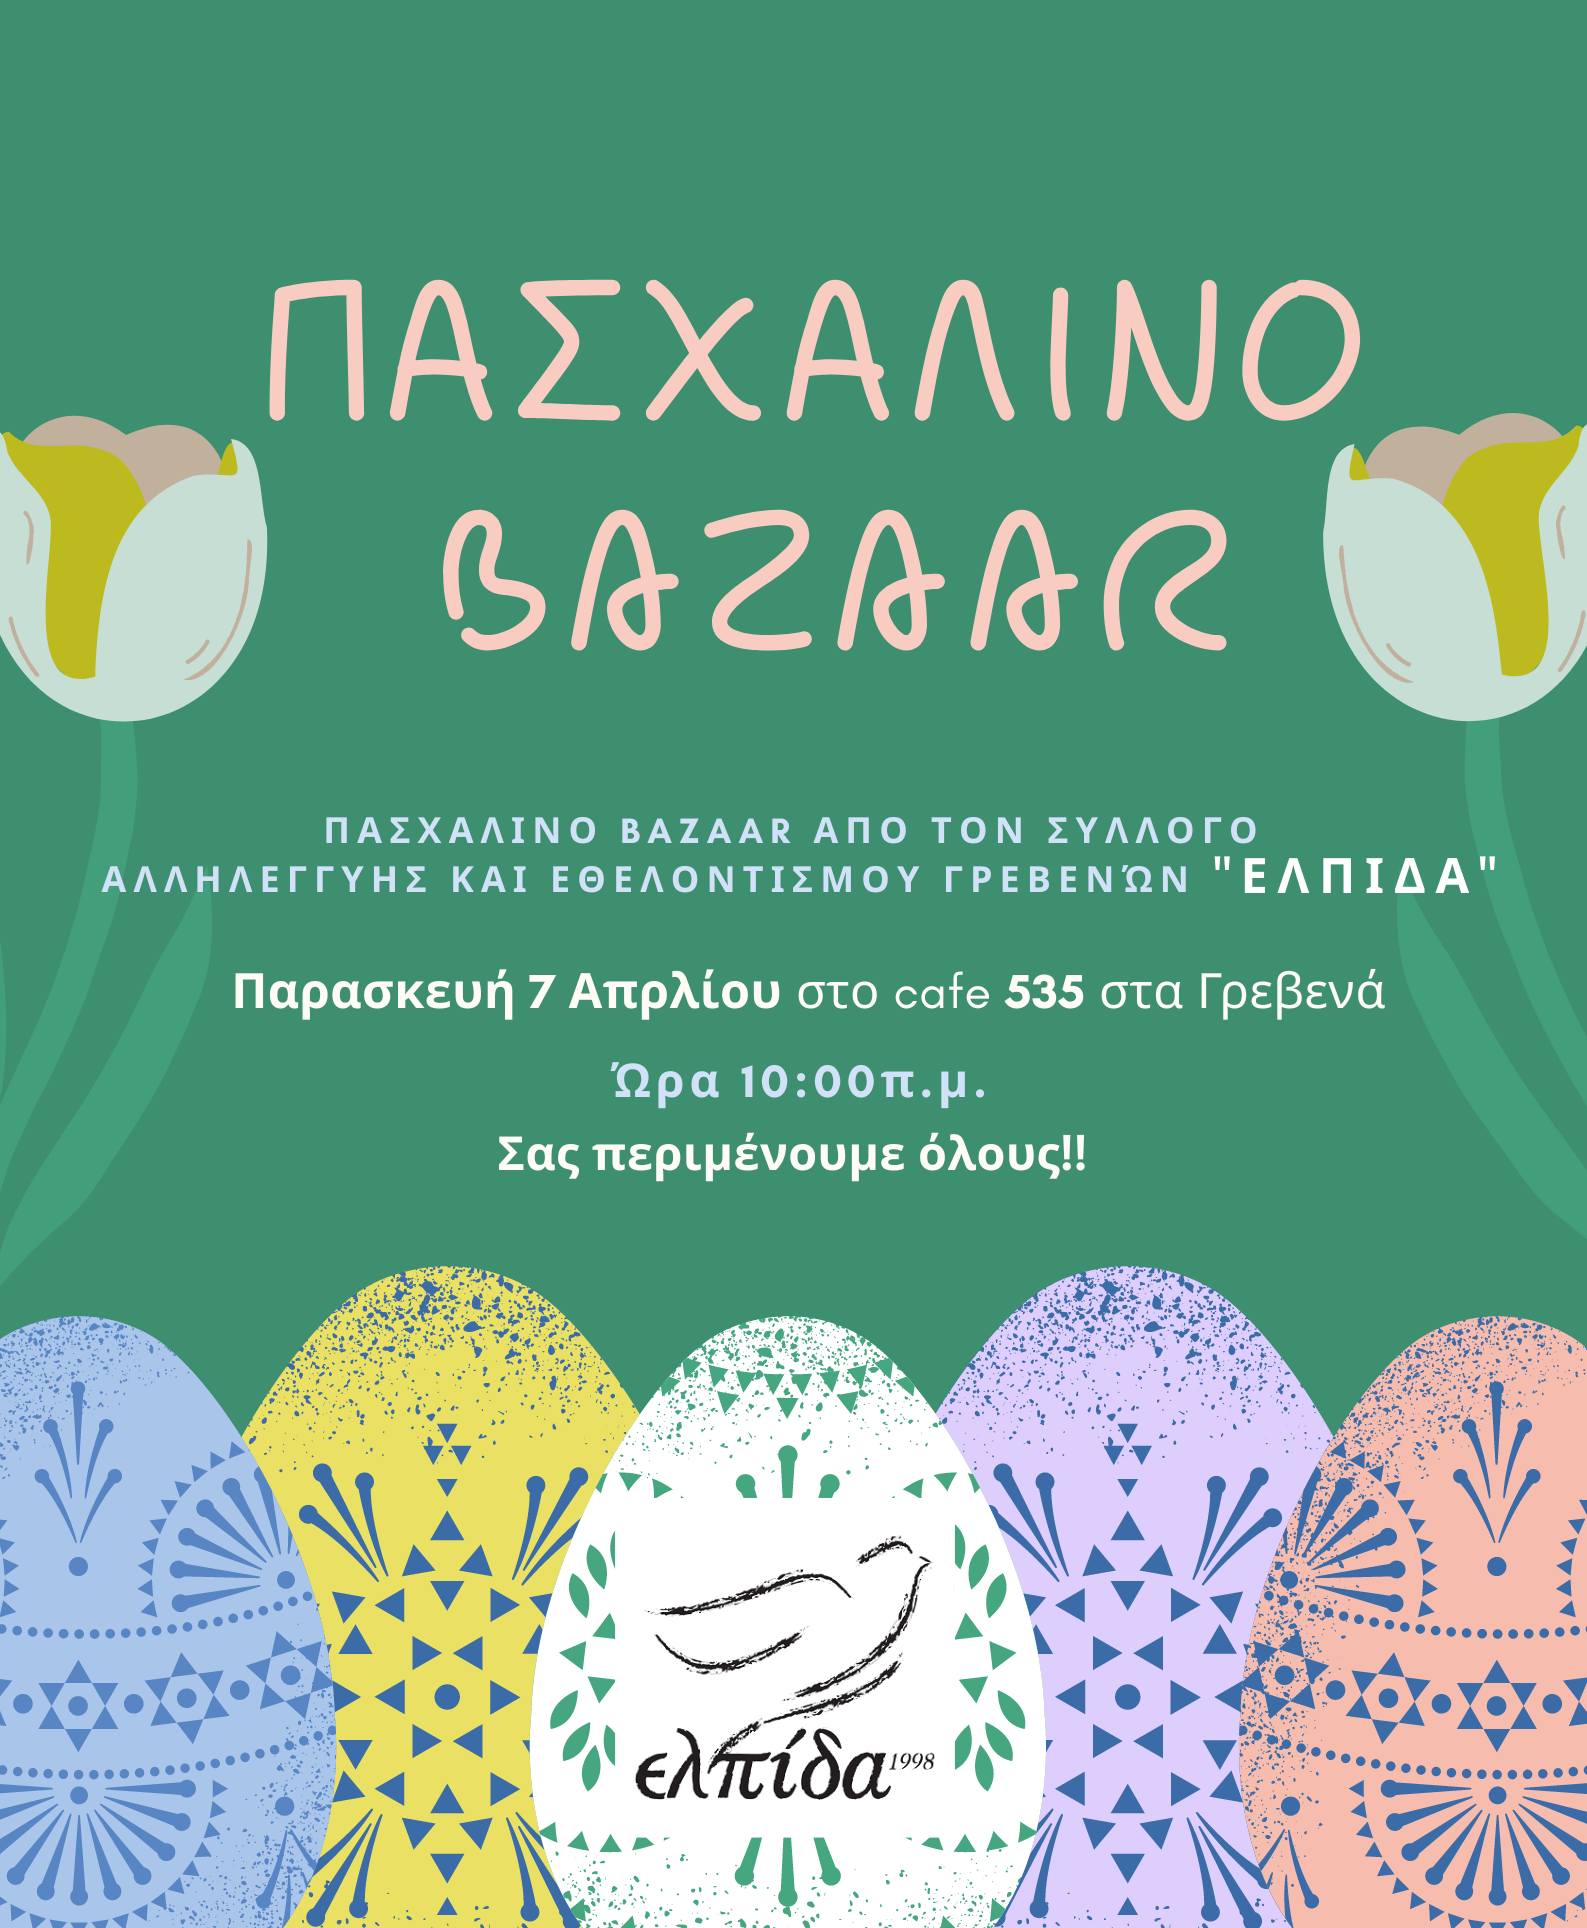 Πασχαλινό Bazaar “ΕΛΠΙΔΑΣ”  